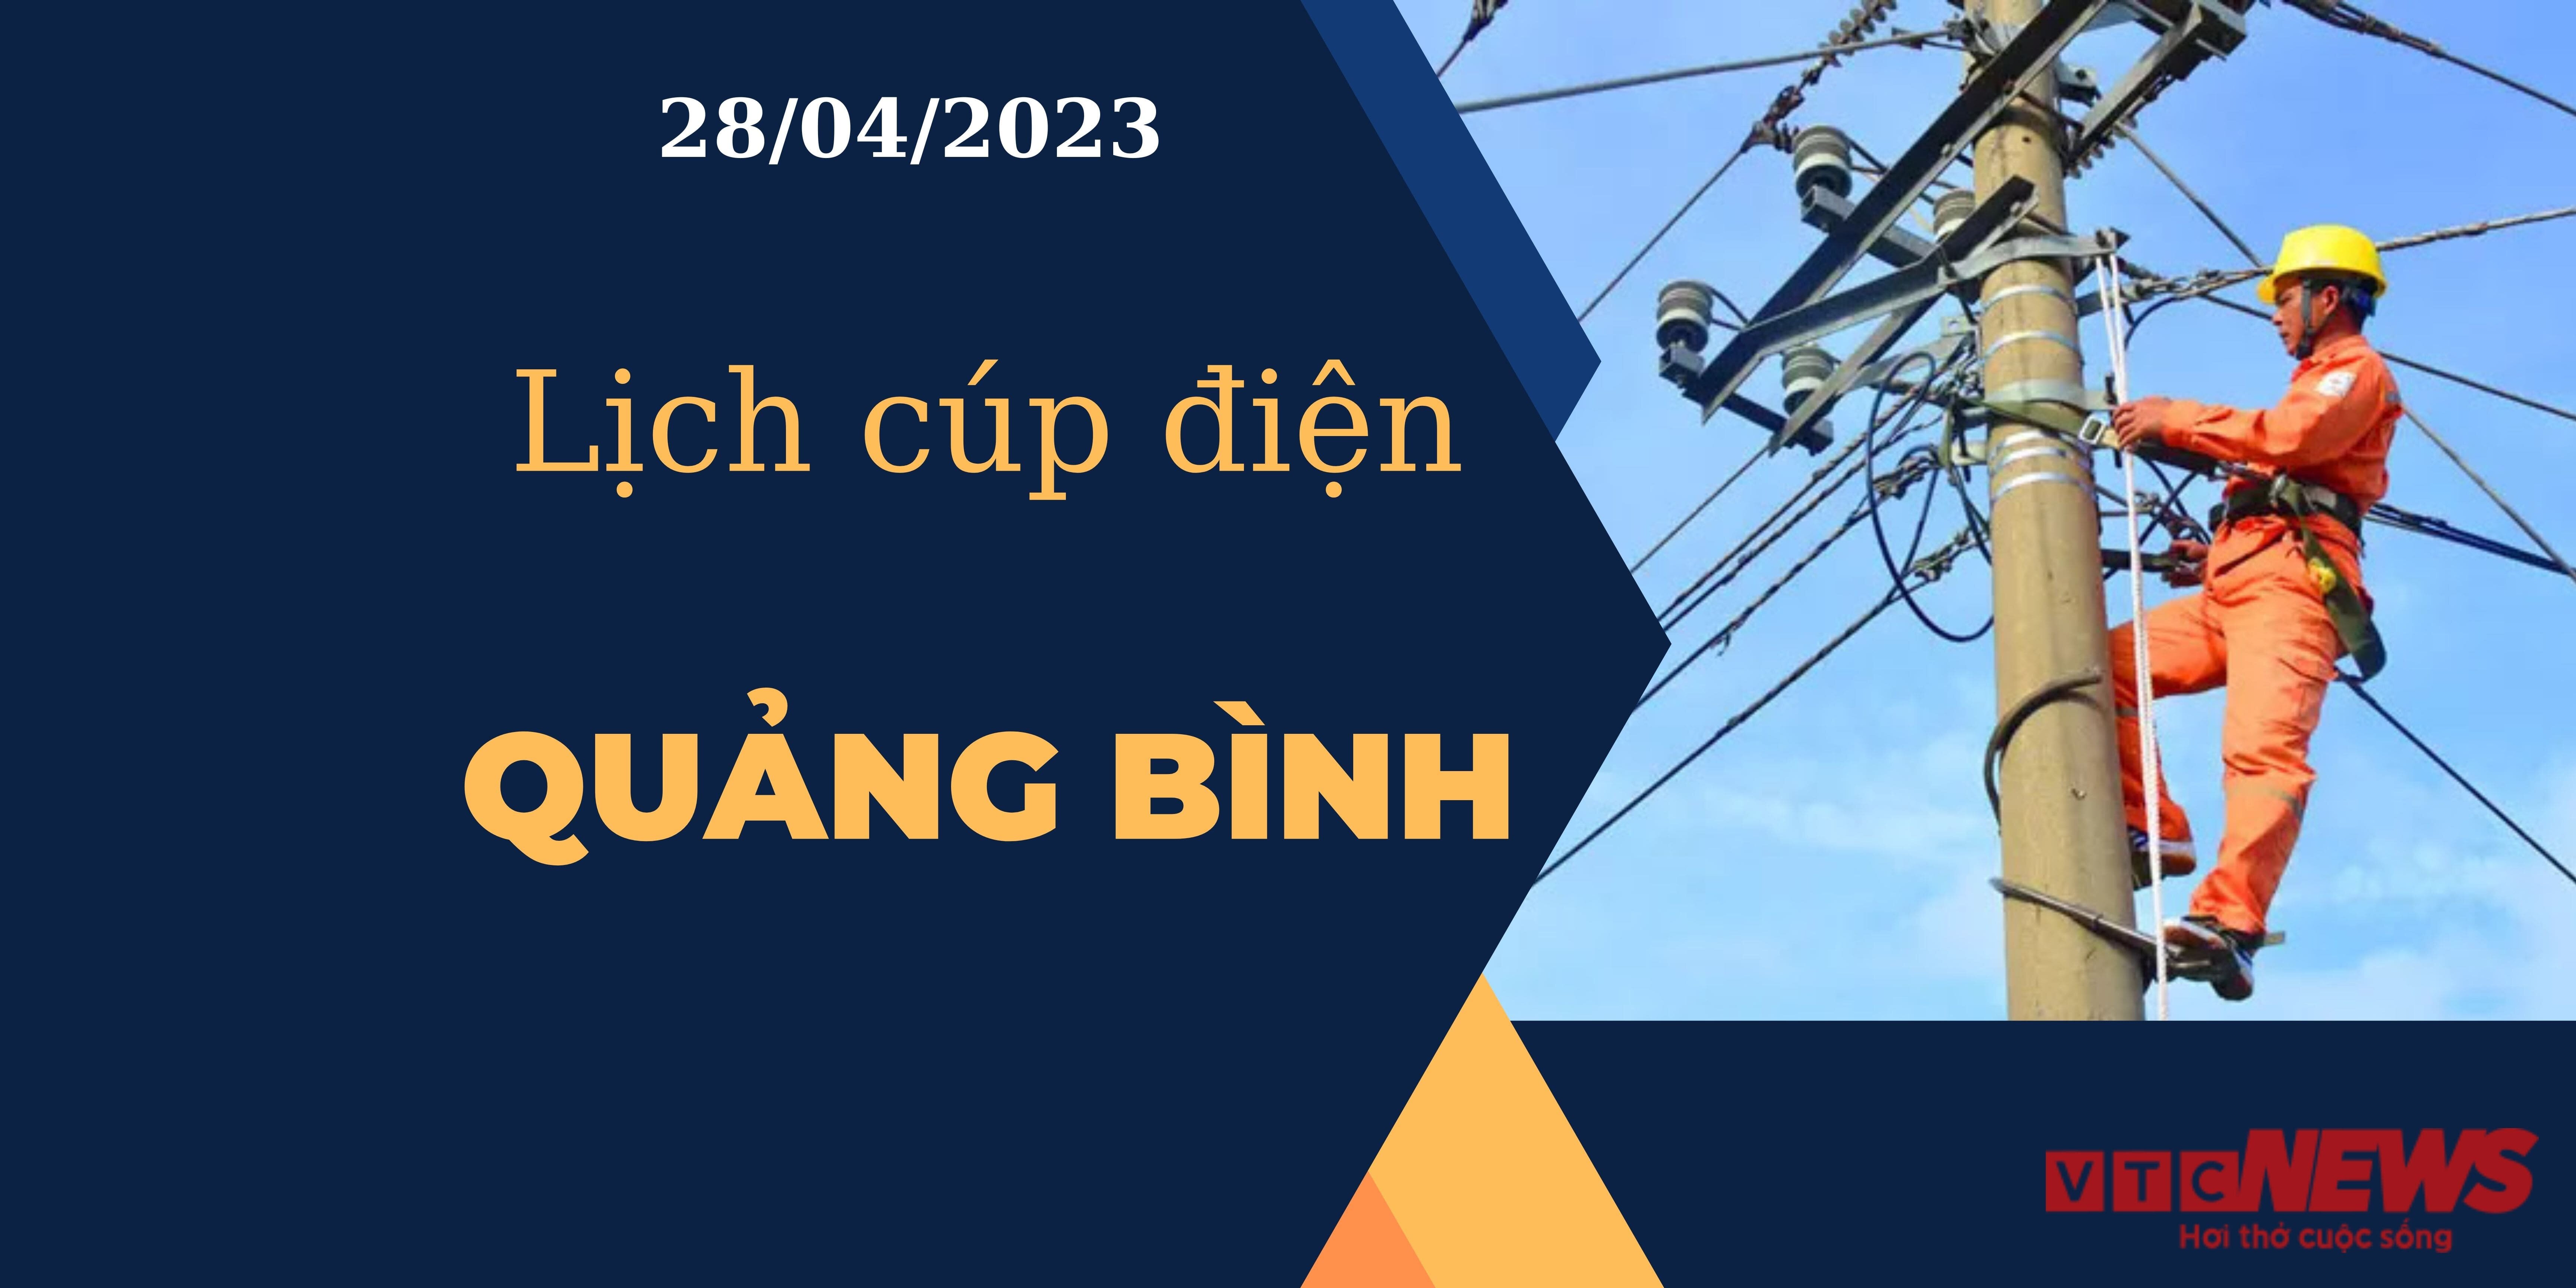 Lịch cúp điện hôm nay tại Quảng Bình ngày 28/04/2023 - 1